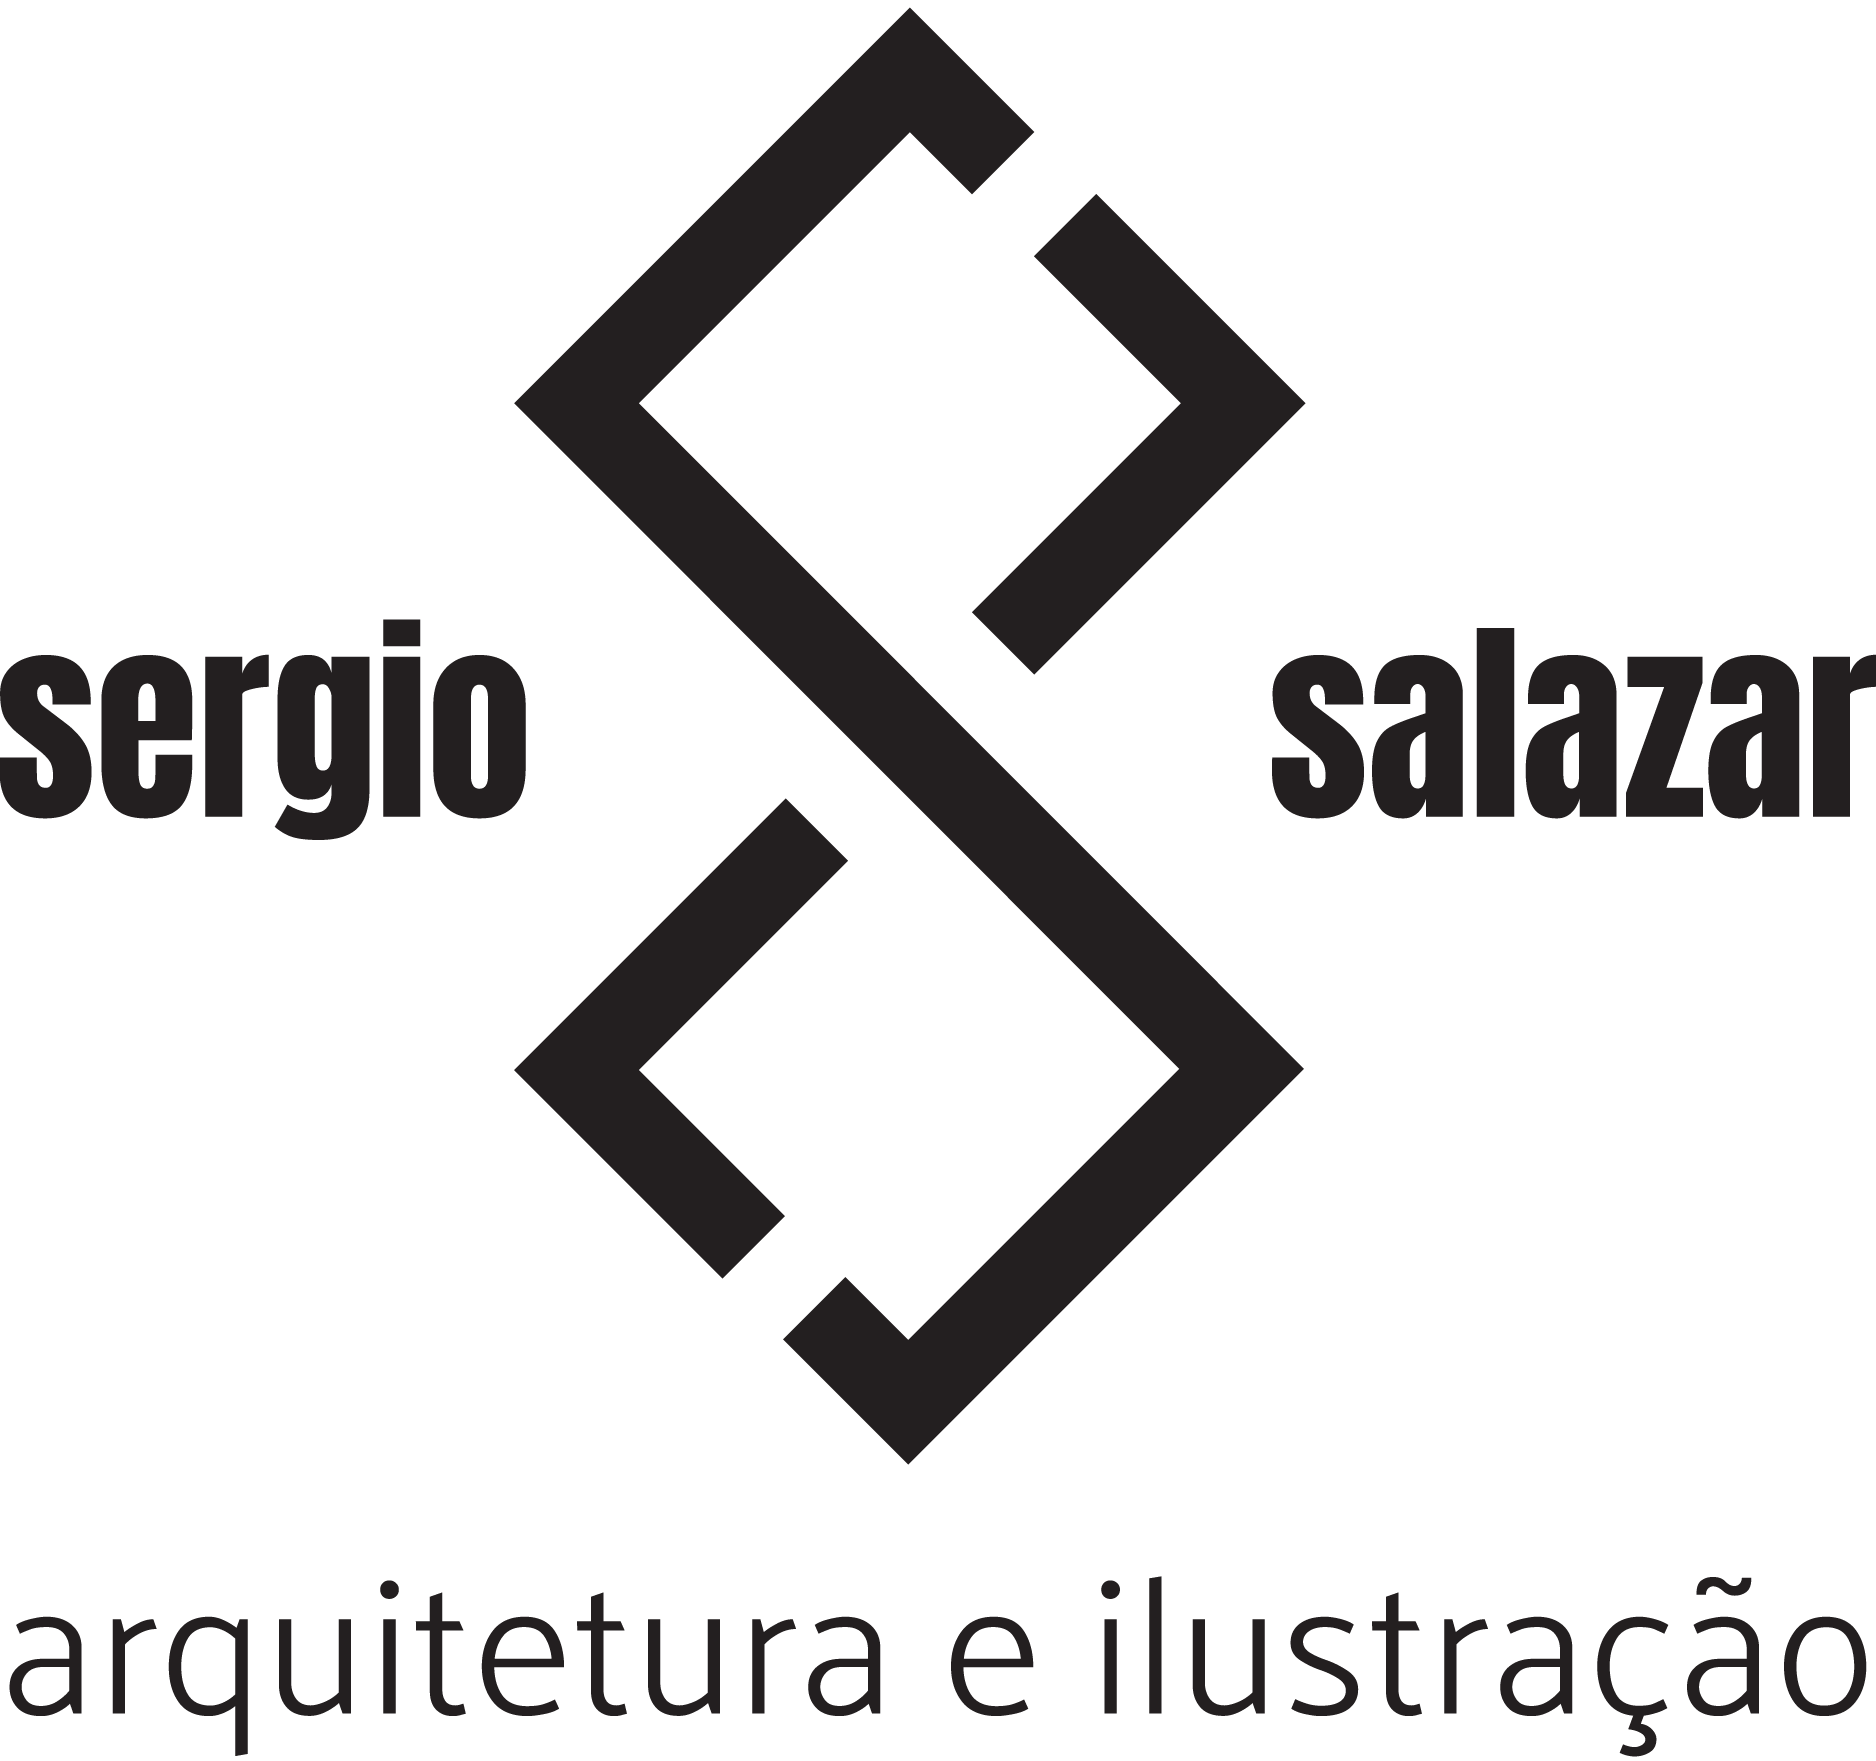 Sérgio Salazar